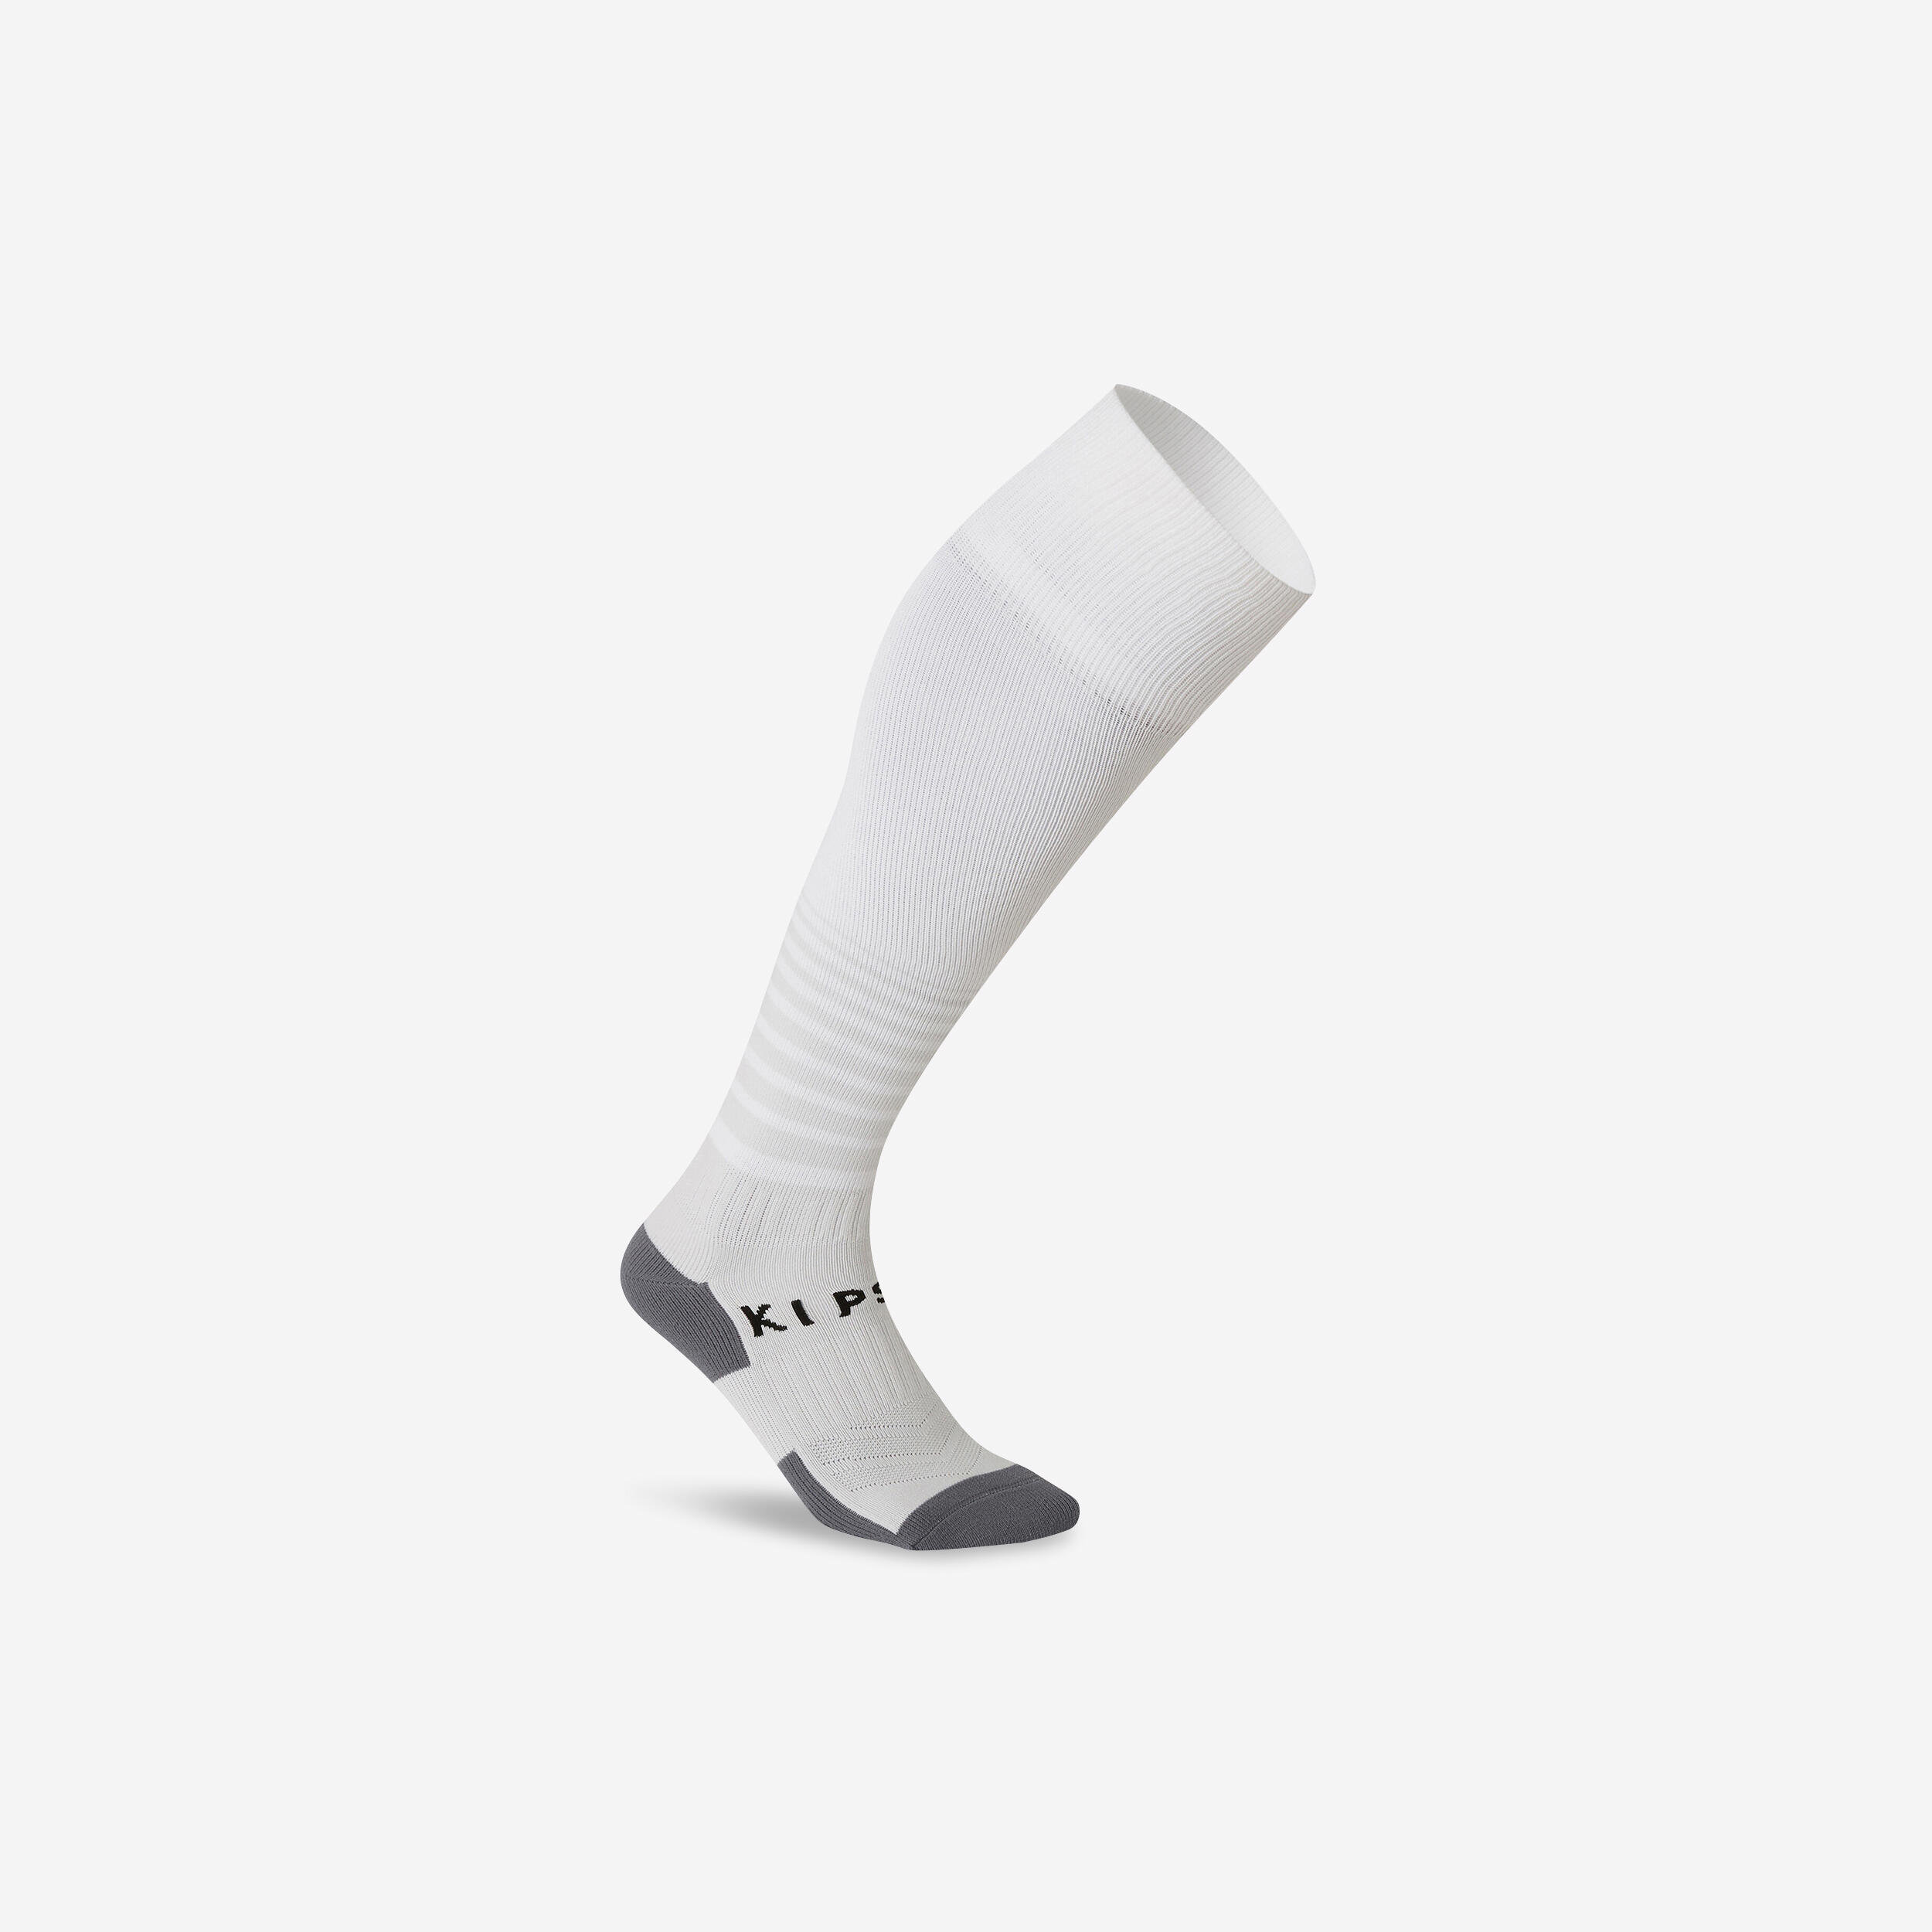 F 500 soccer socks - Kids - Snow white - Kipsta - Decathlon